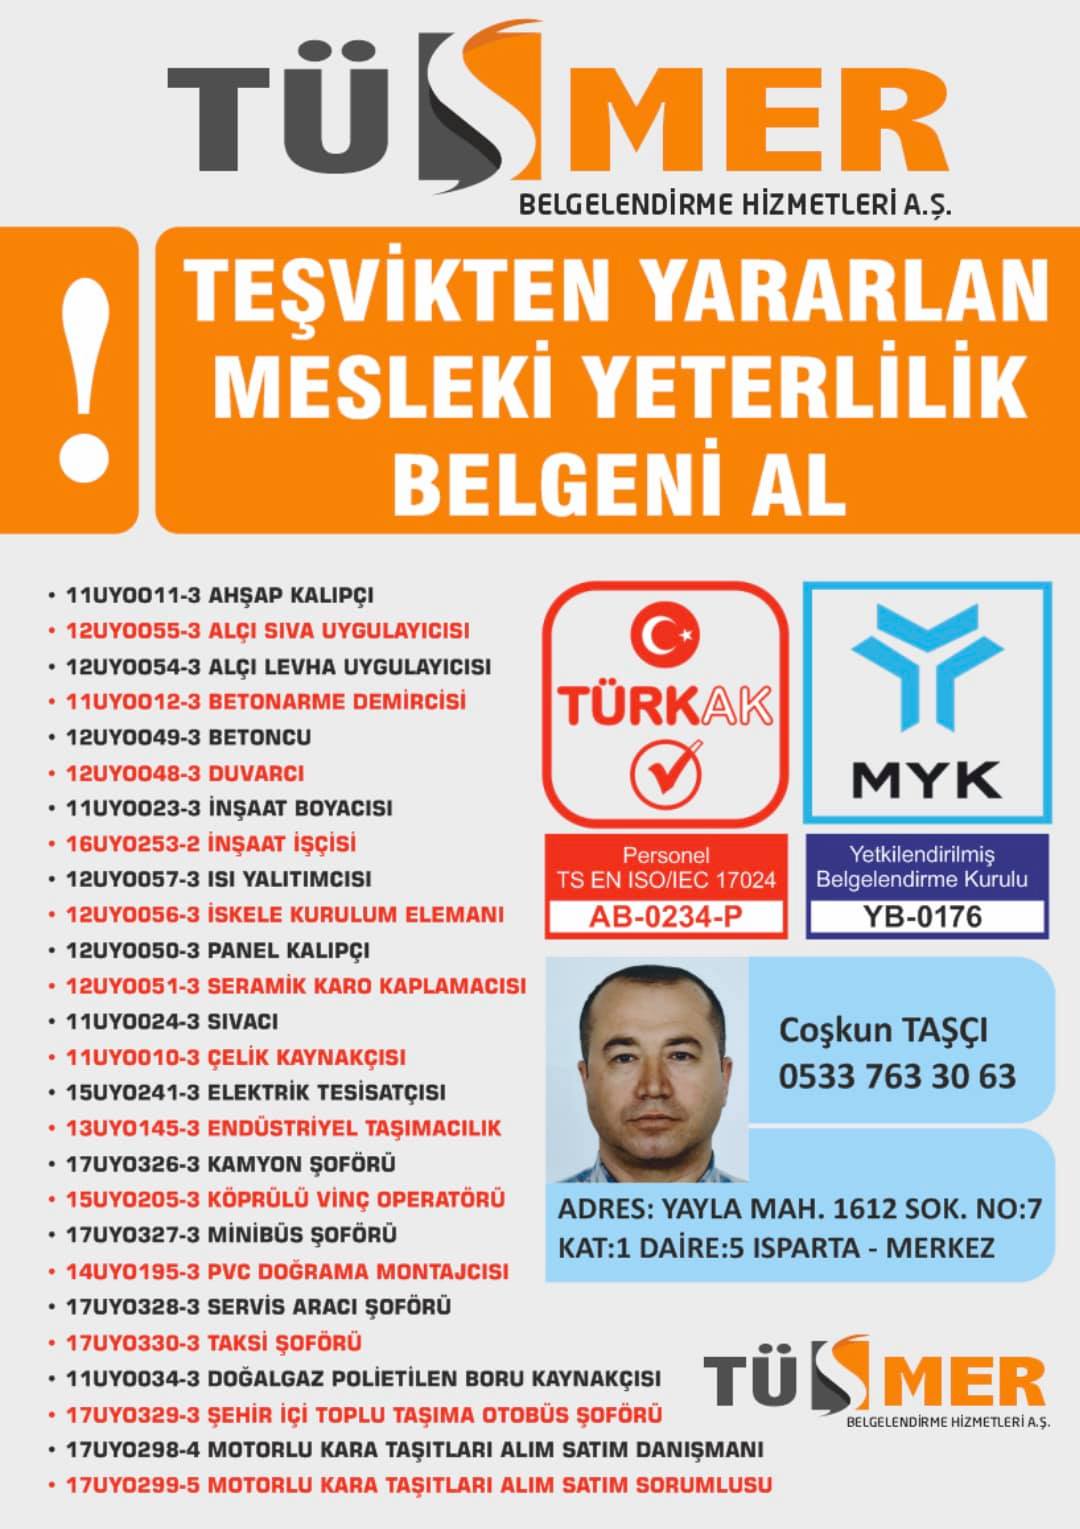 MYK MESLEKİ YETERLİLİK BELGESİ Cumhuriyet Büyükçekmece İstanbul